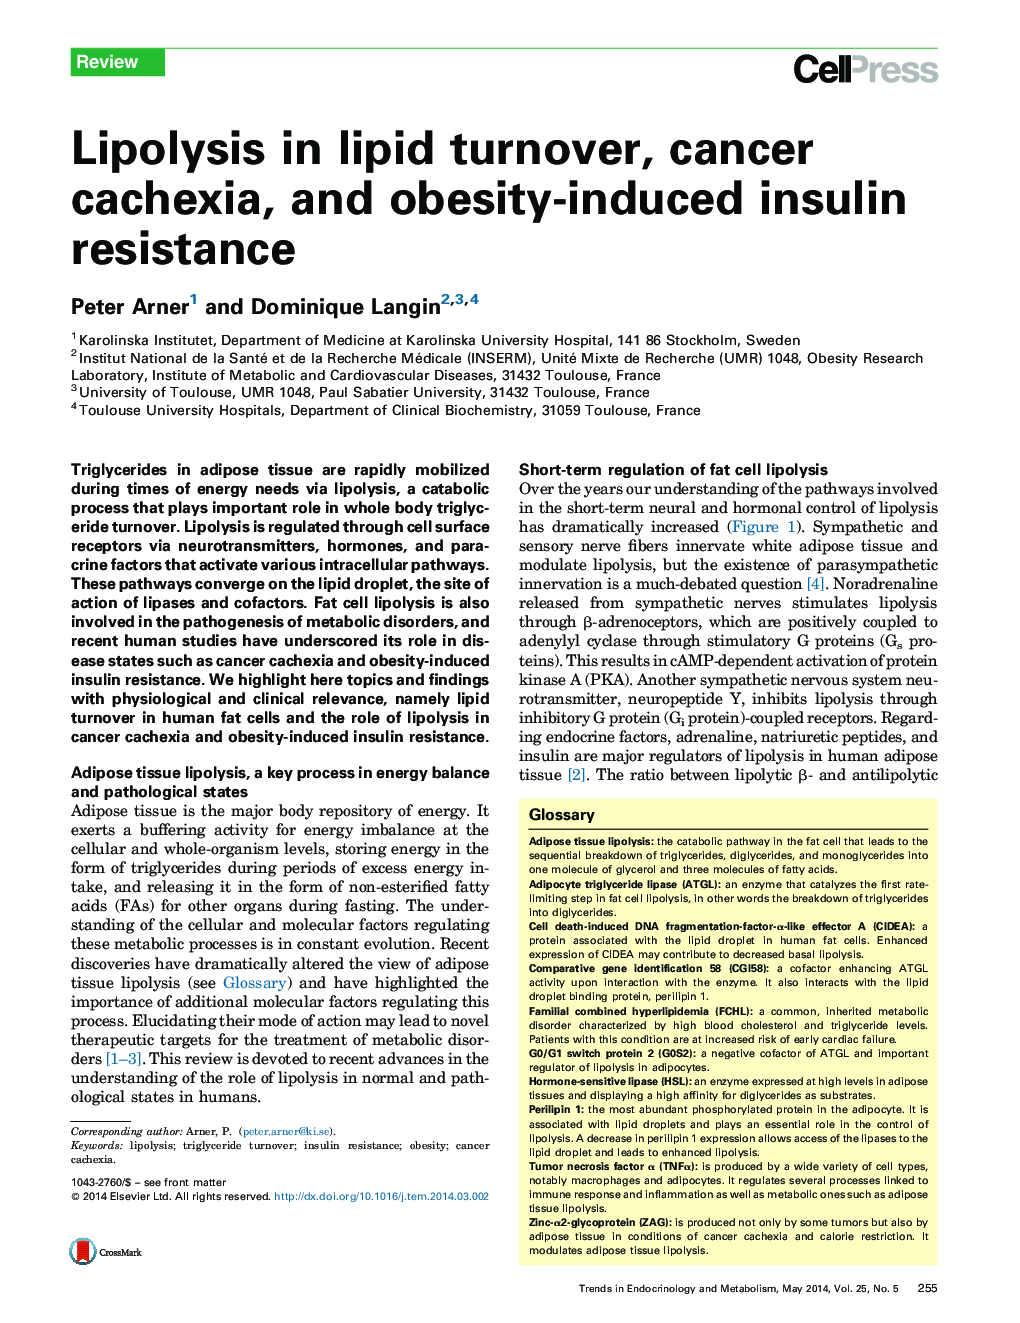 لیپولیز در گردش لیپید، کشش سرطانی و مقاومت به انسولین ناشی از چاقی 